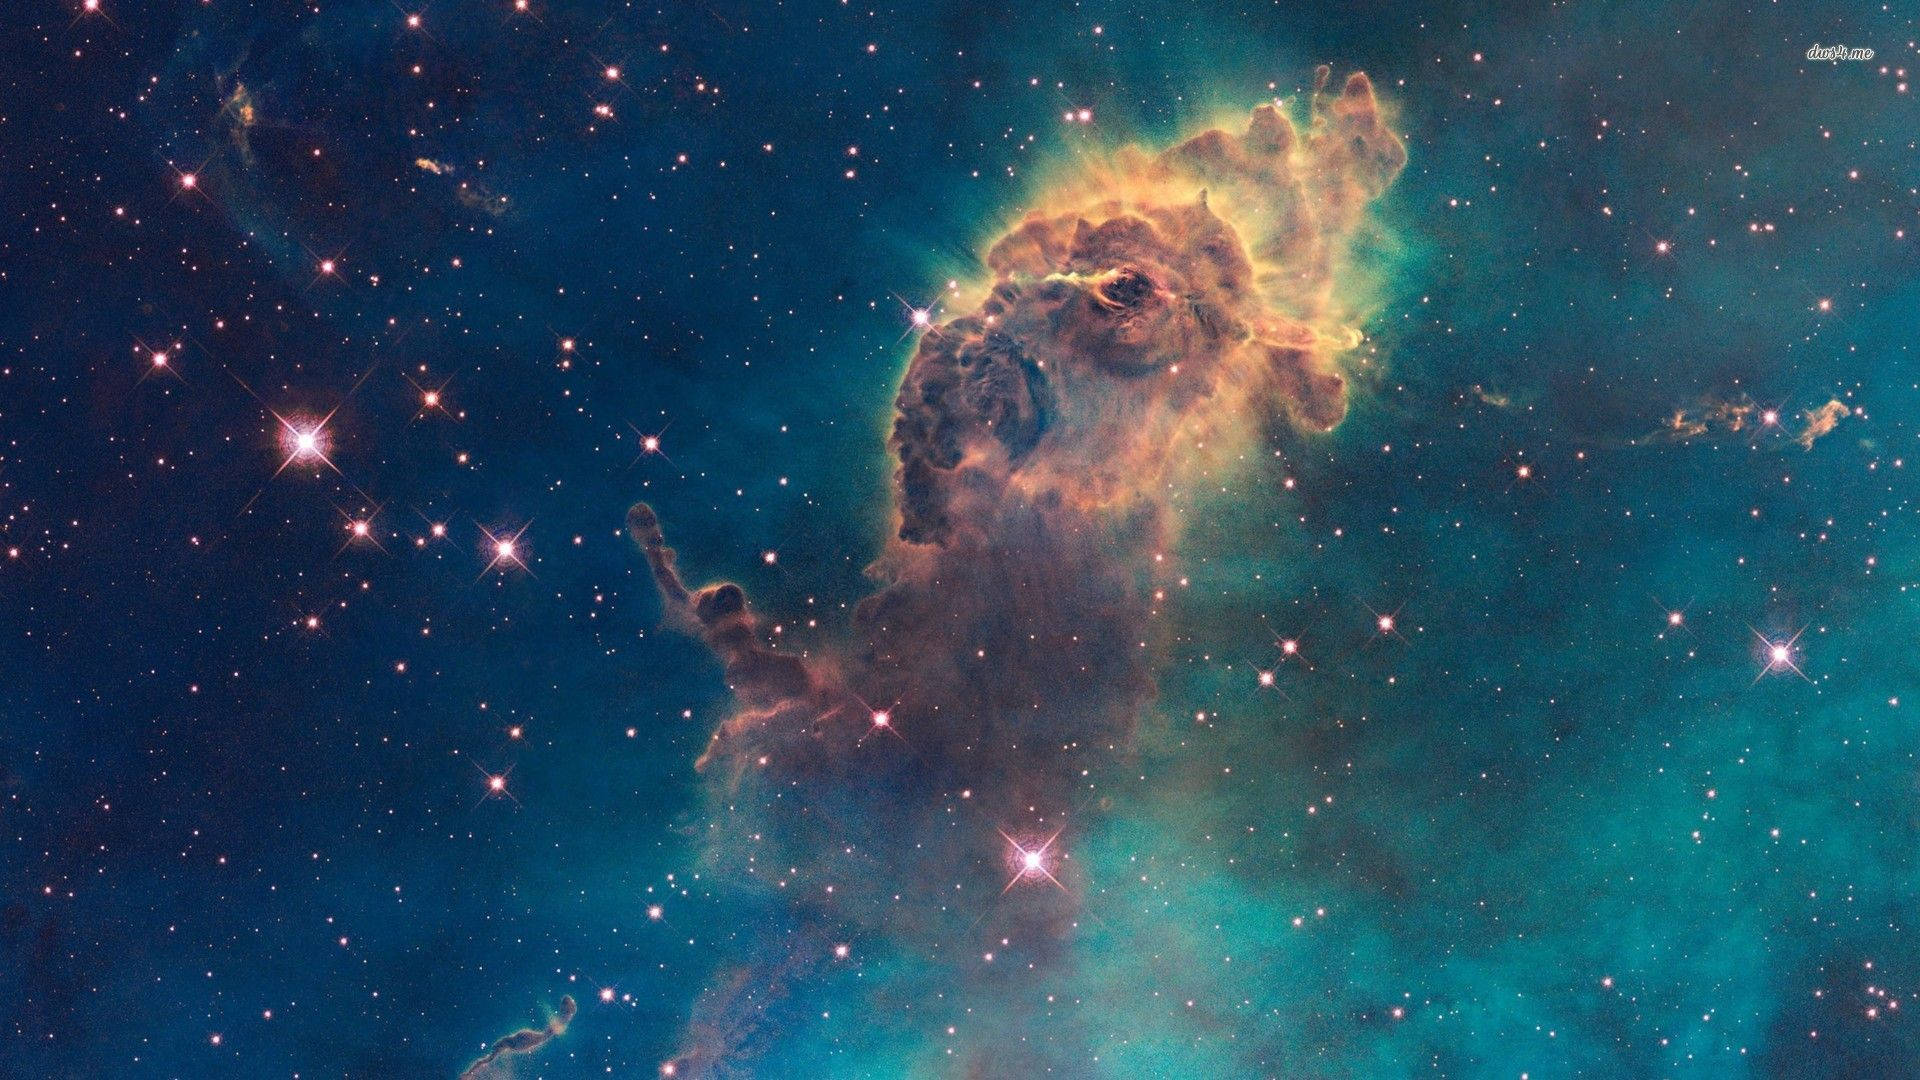 Nebula Wallpaper, Gallery Of 47 Nebula Background, Wallpaper. Gg.yan